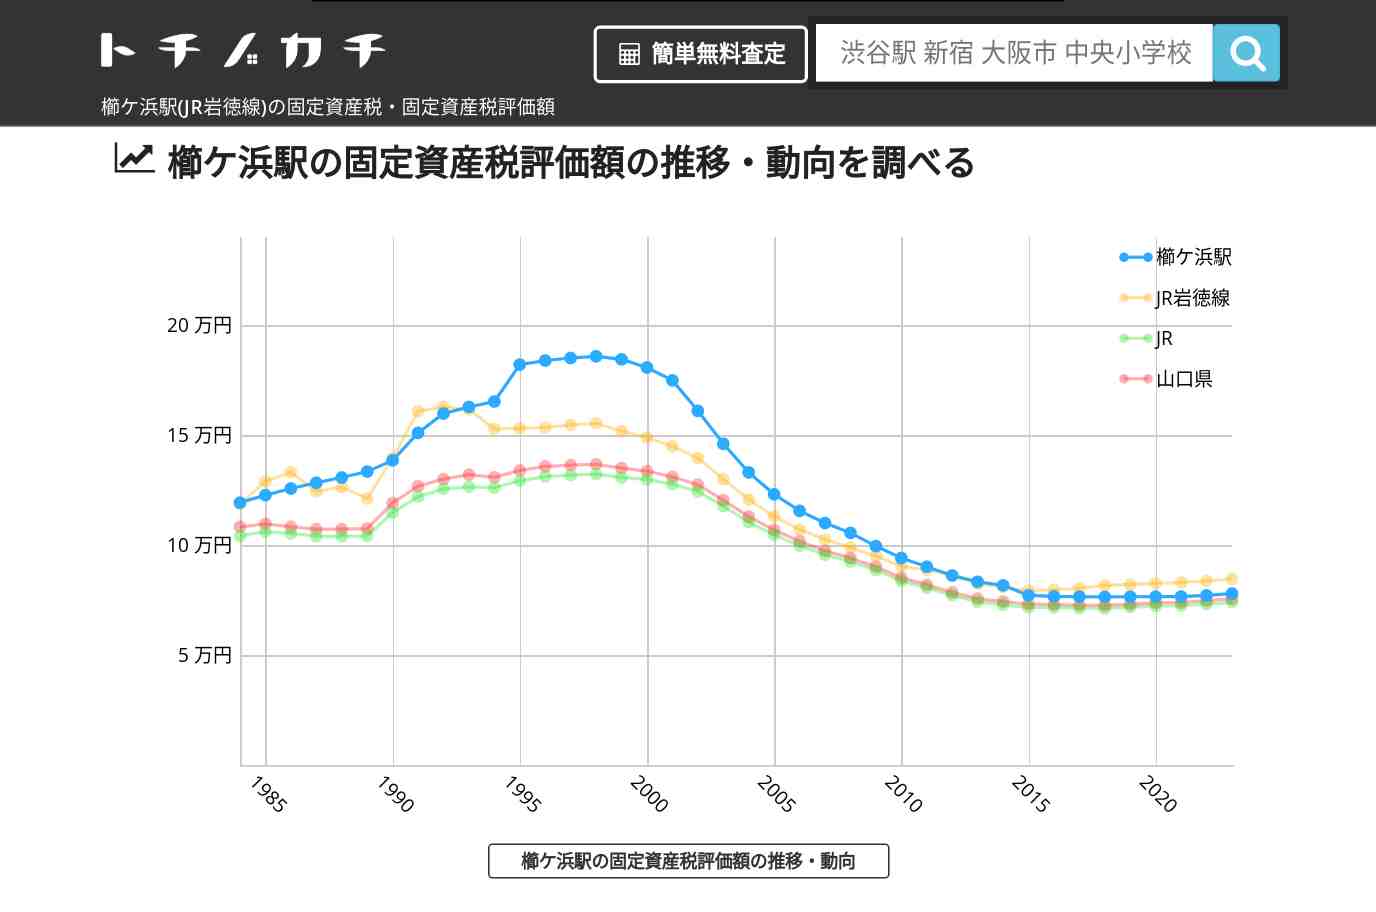 櫛ケ浜駅(JR岩徳線)の固定資産税・固定資産税評価額 | トチノカチ